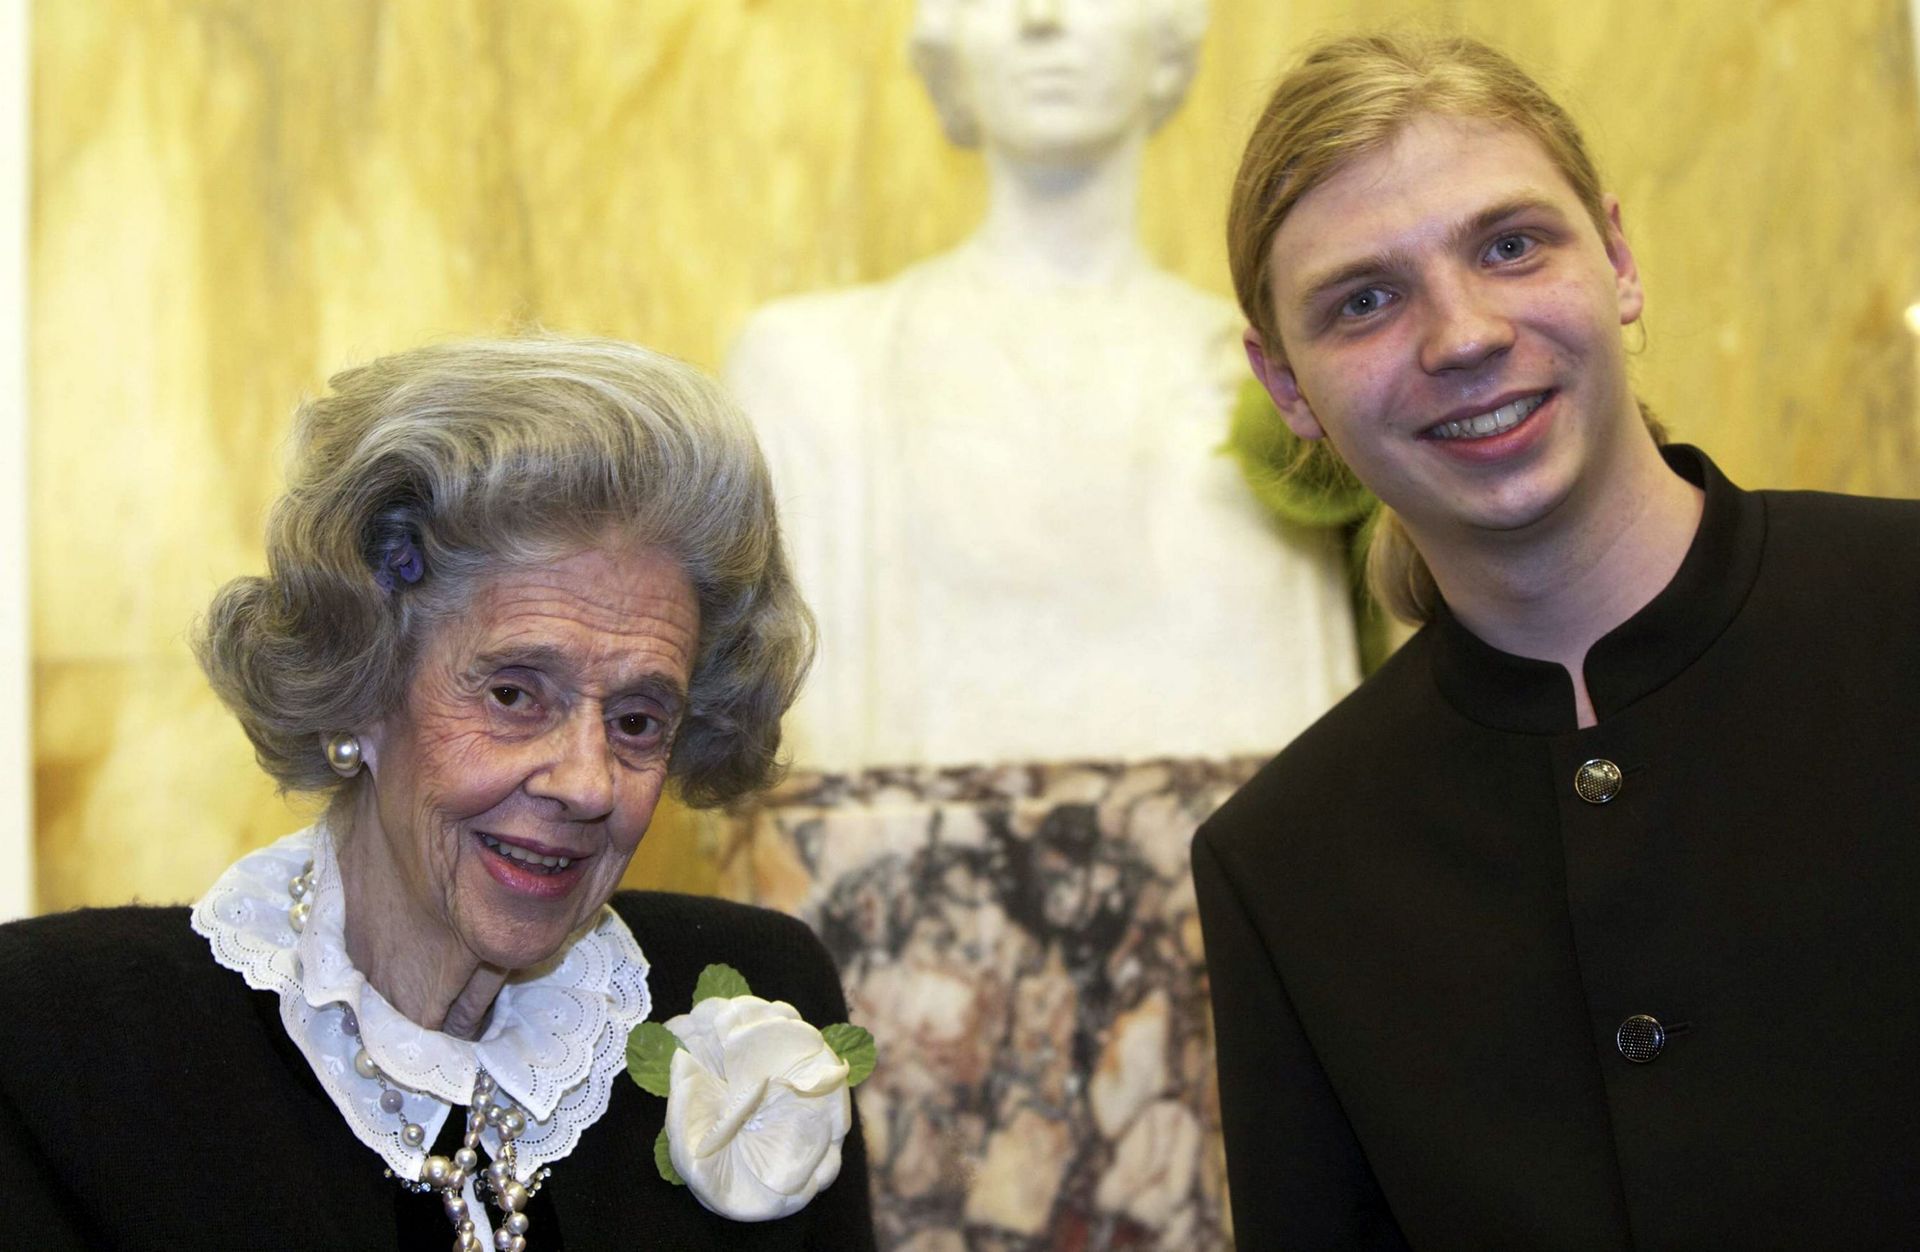 Denis Kozhukhin, 1er lauréat du Concours Reine Elisabeth, en compagnie de la Reine Fabiola